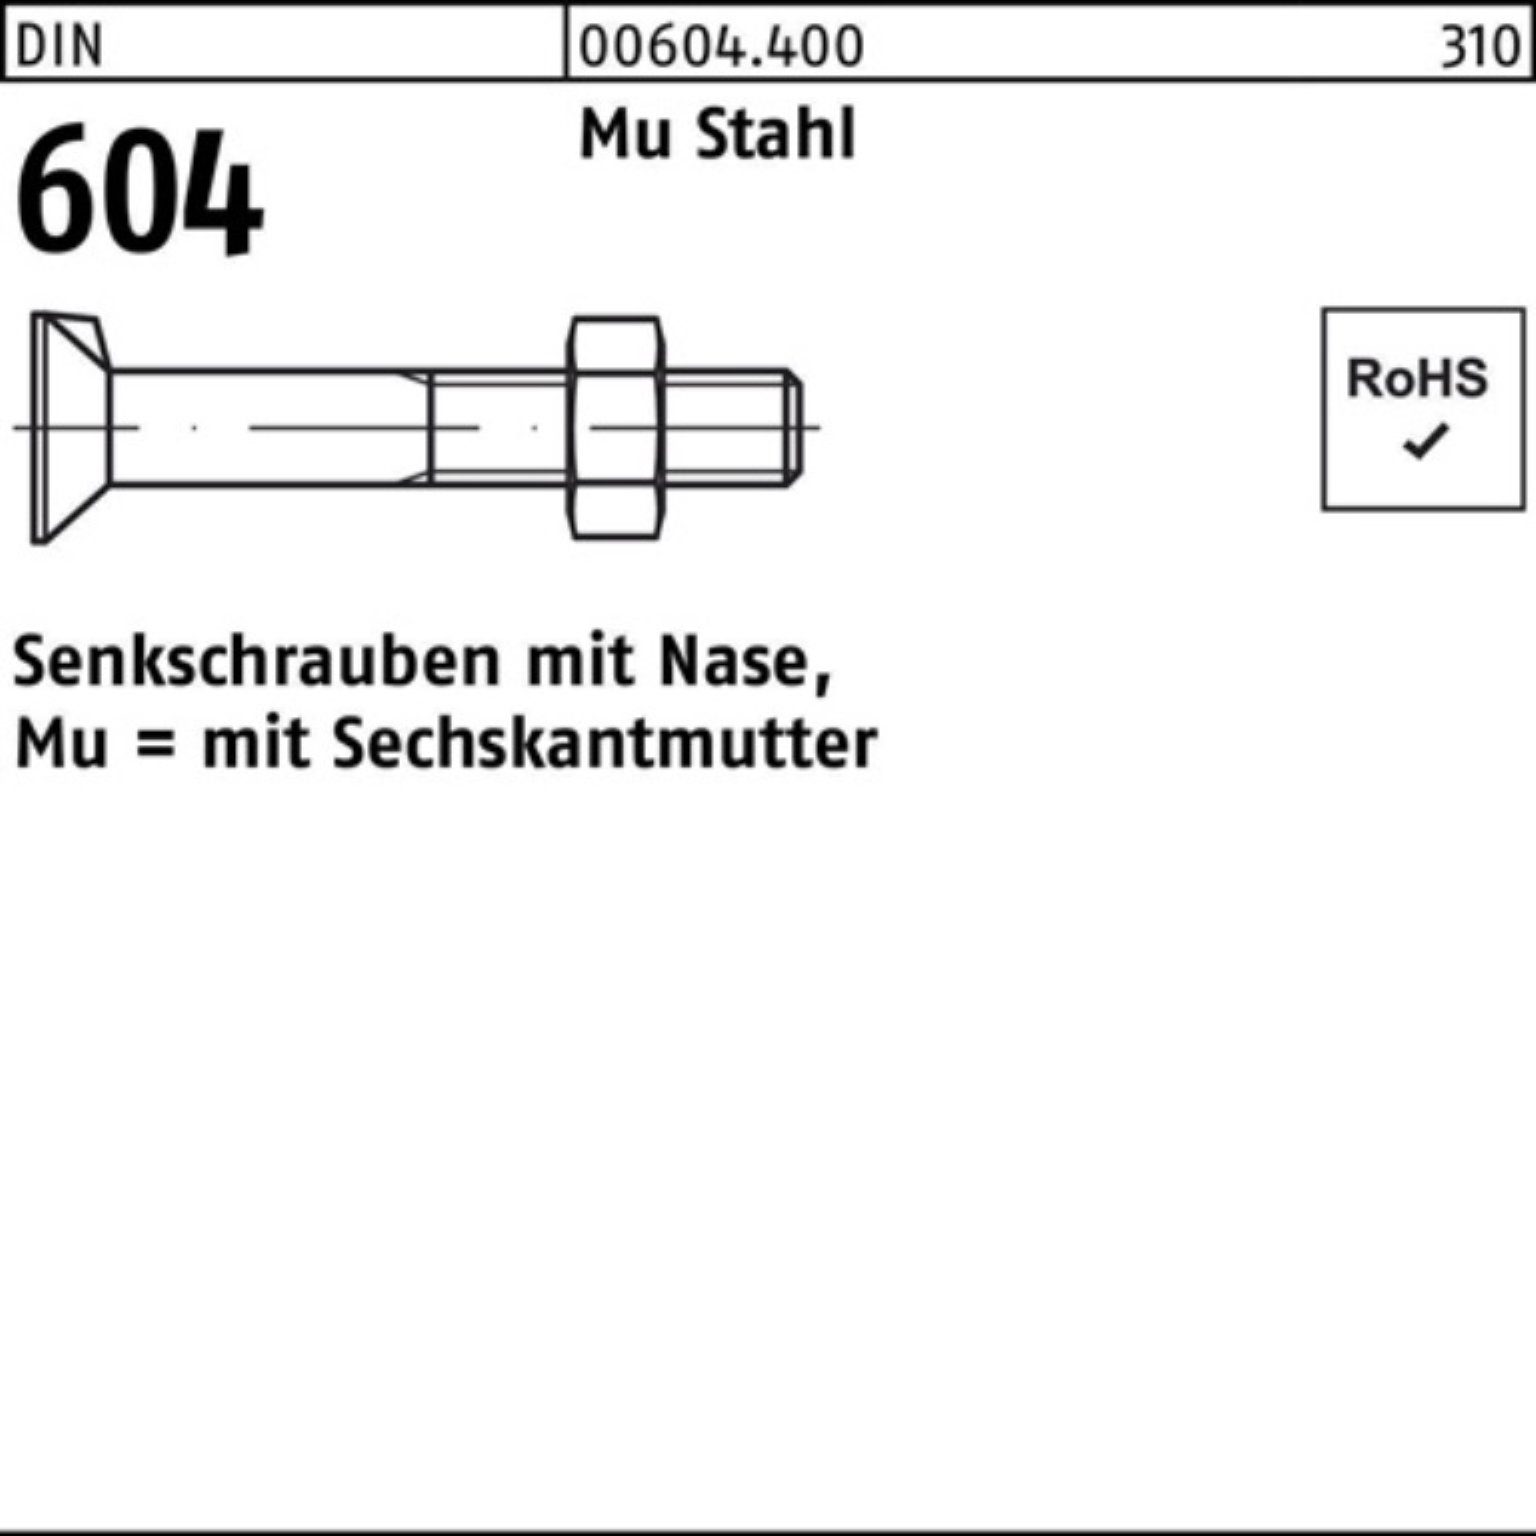 Reyher Senkschraube 100er Pack Senkschraube DIN 604 Nase/6-ktmutter M20x 130 Mu Stahl 4.6